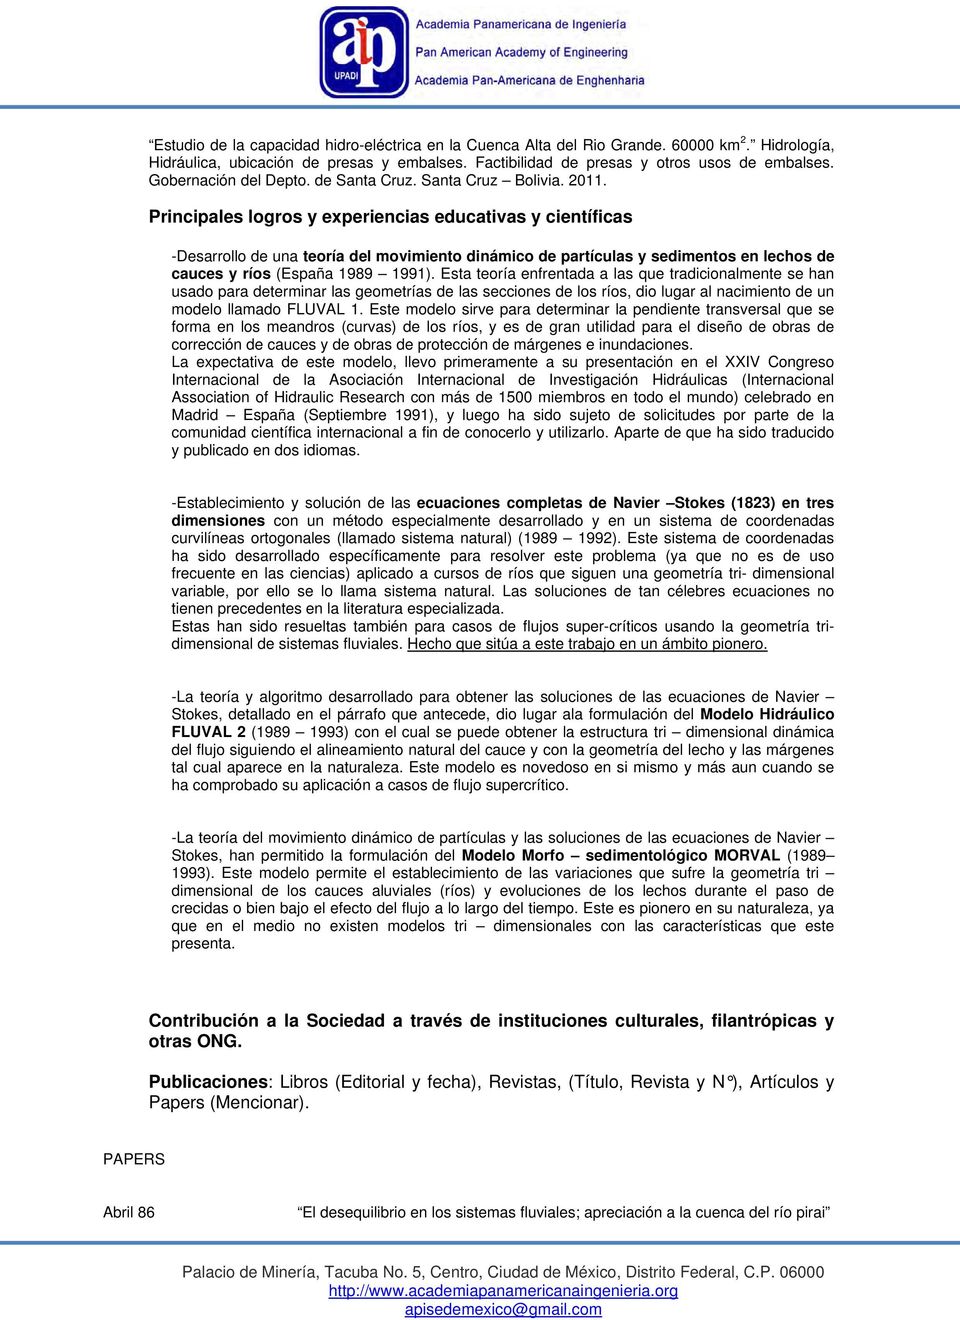 Principales logros y experiencias educativas y científicas -Desarrollo de una teoría del movimiento dinámico de partículas y sedimentos en lechos de cauces y ríos (España 1989 1991).